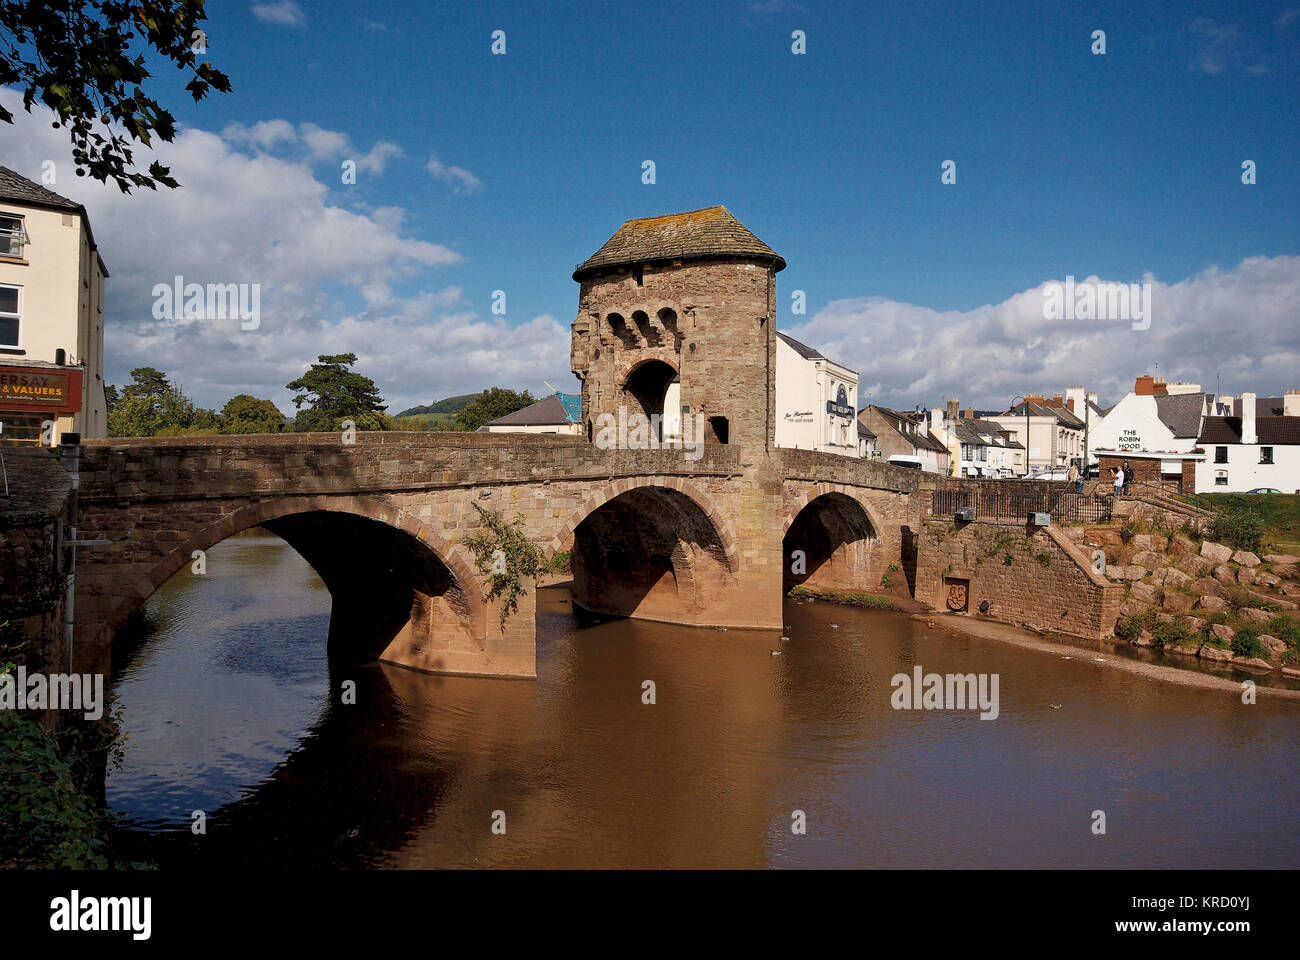 Puente Monnow y Gate, Monmouth, Gwent. Construido al otro lado del Río Wye a finales del siglo XIII, este es un raro la supervivencia de un puente medieval donde se levanta la torre de la puerta en el propio puente. Fecha: Septiembre de 2007 Foto de stock